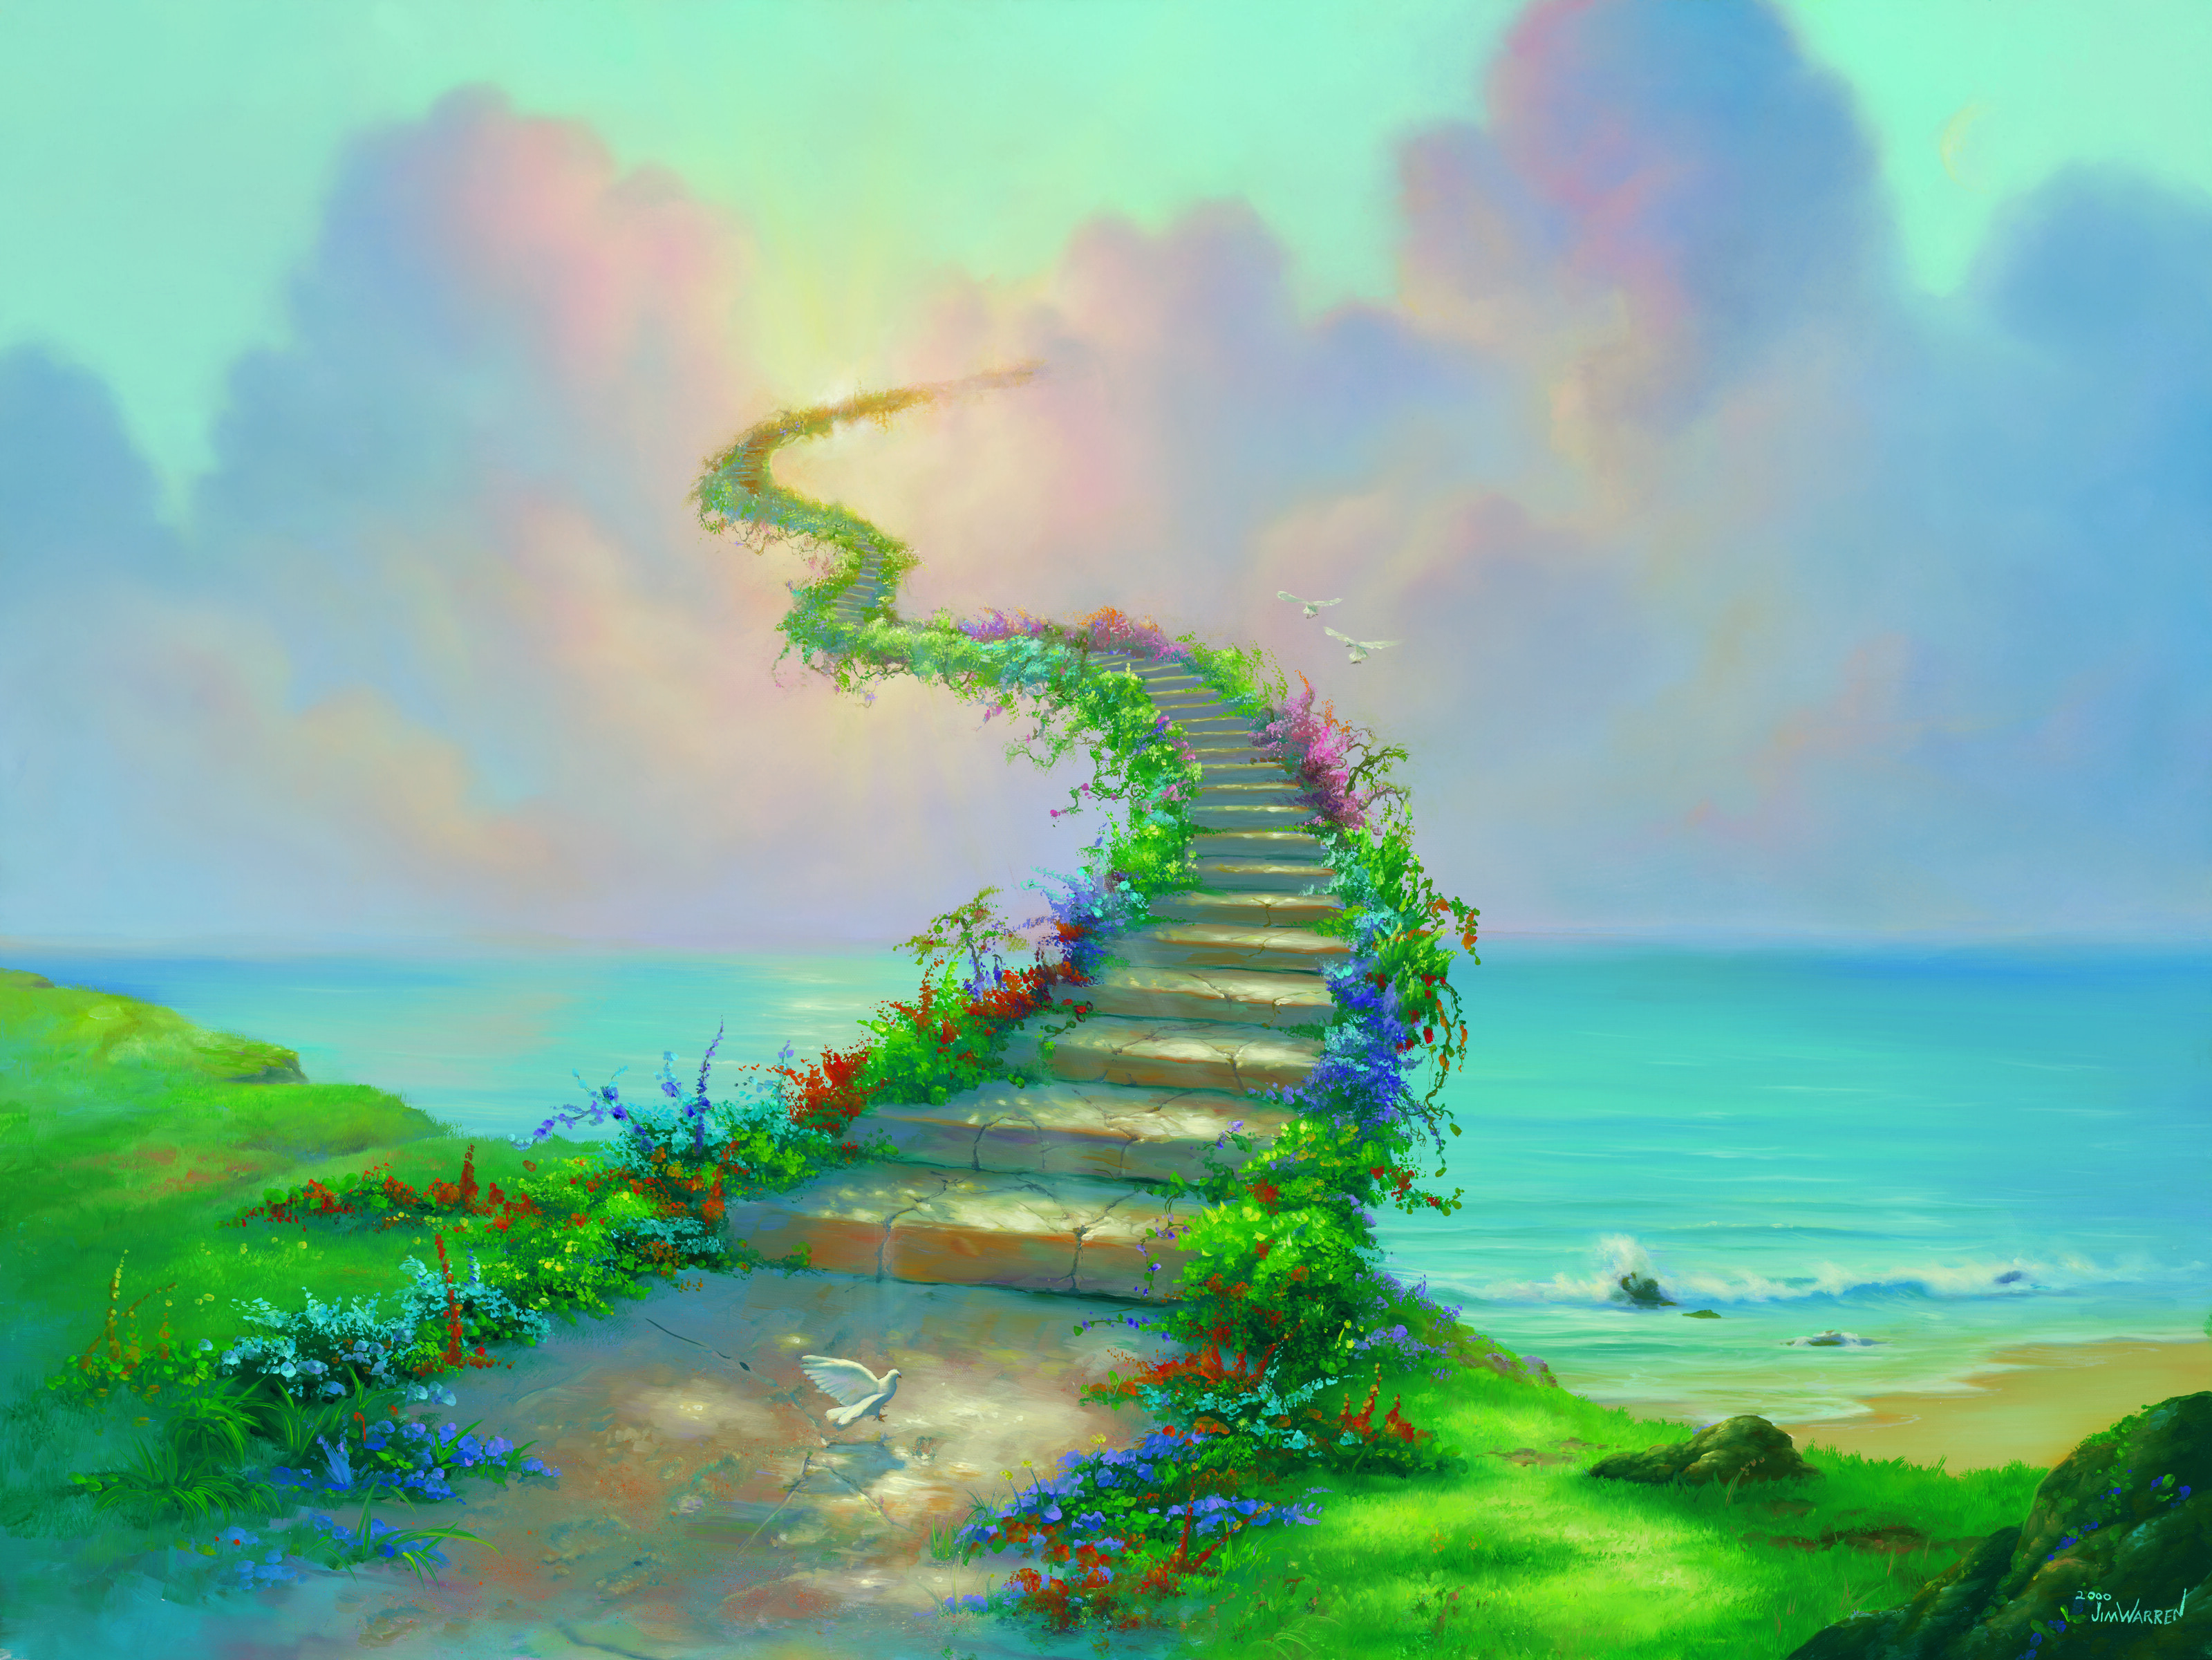 Stairway To Heaven Wall Mural by Jim Warren - Murals Your Way